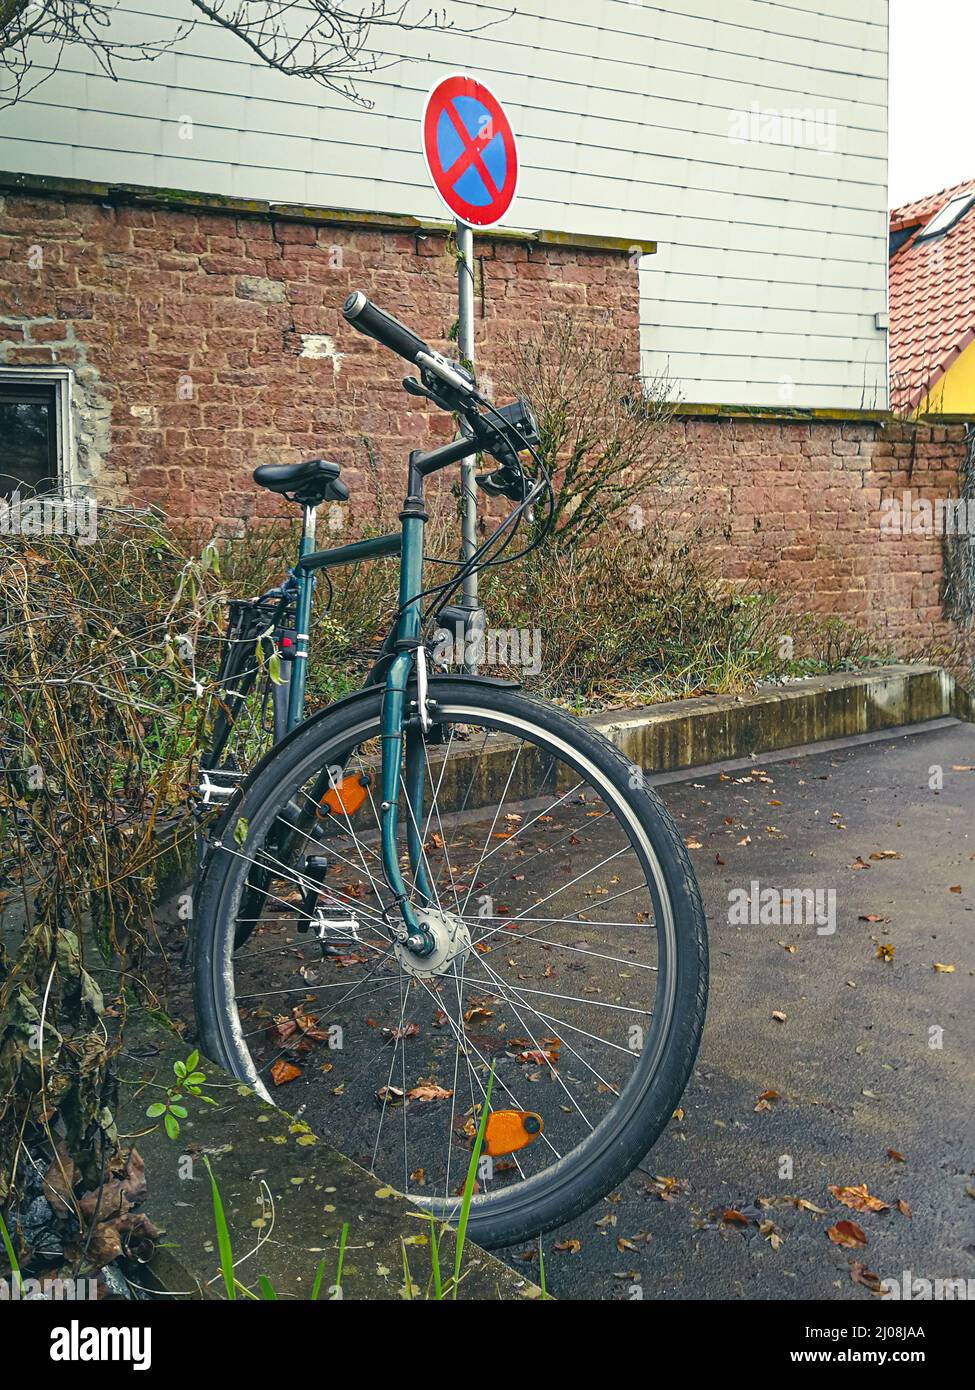 Fahrrad in einer No-Stop-Zone geparkt. Symbolisches Bild von Parkplatzmanagement Probleme Stockfoto